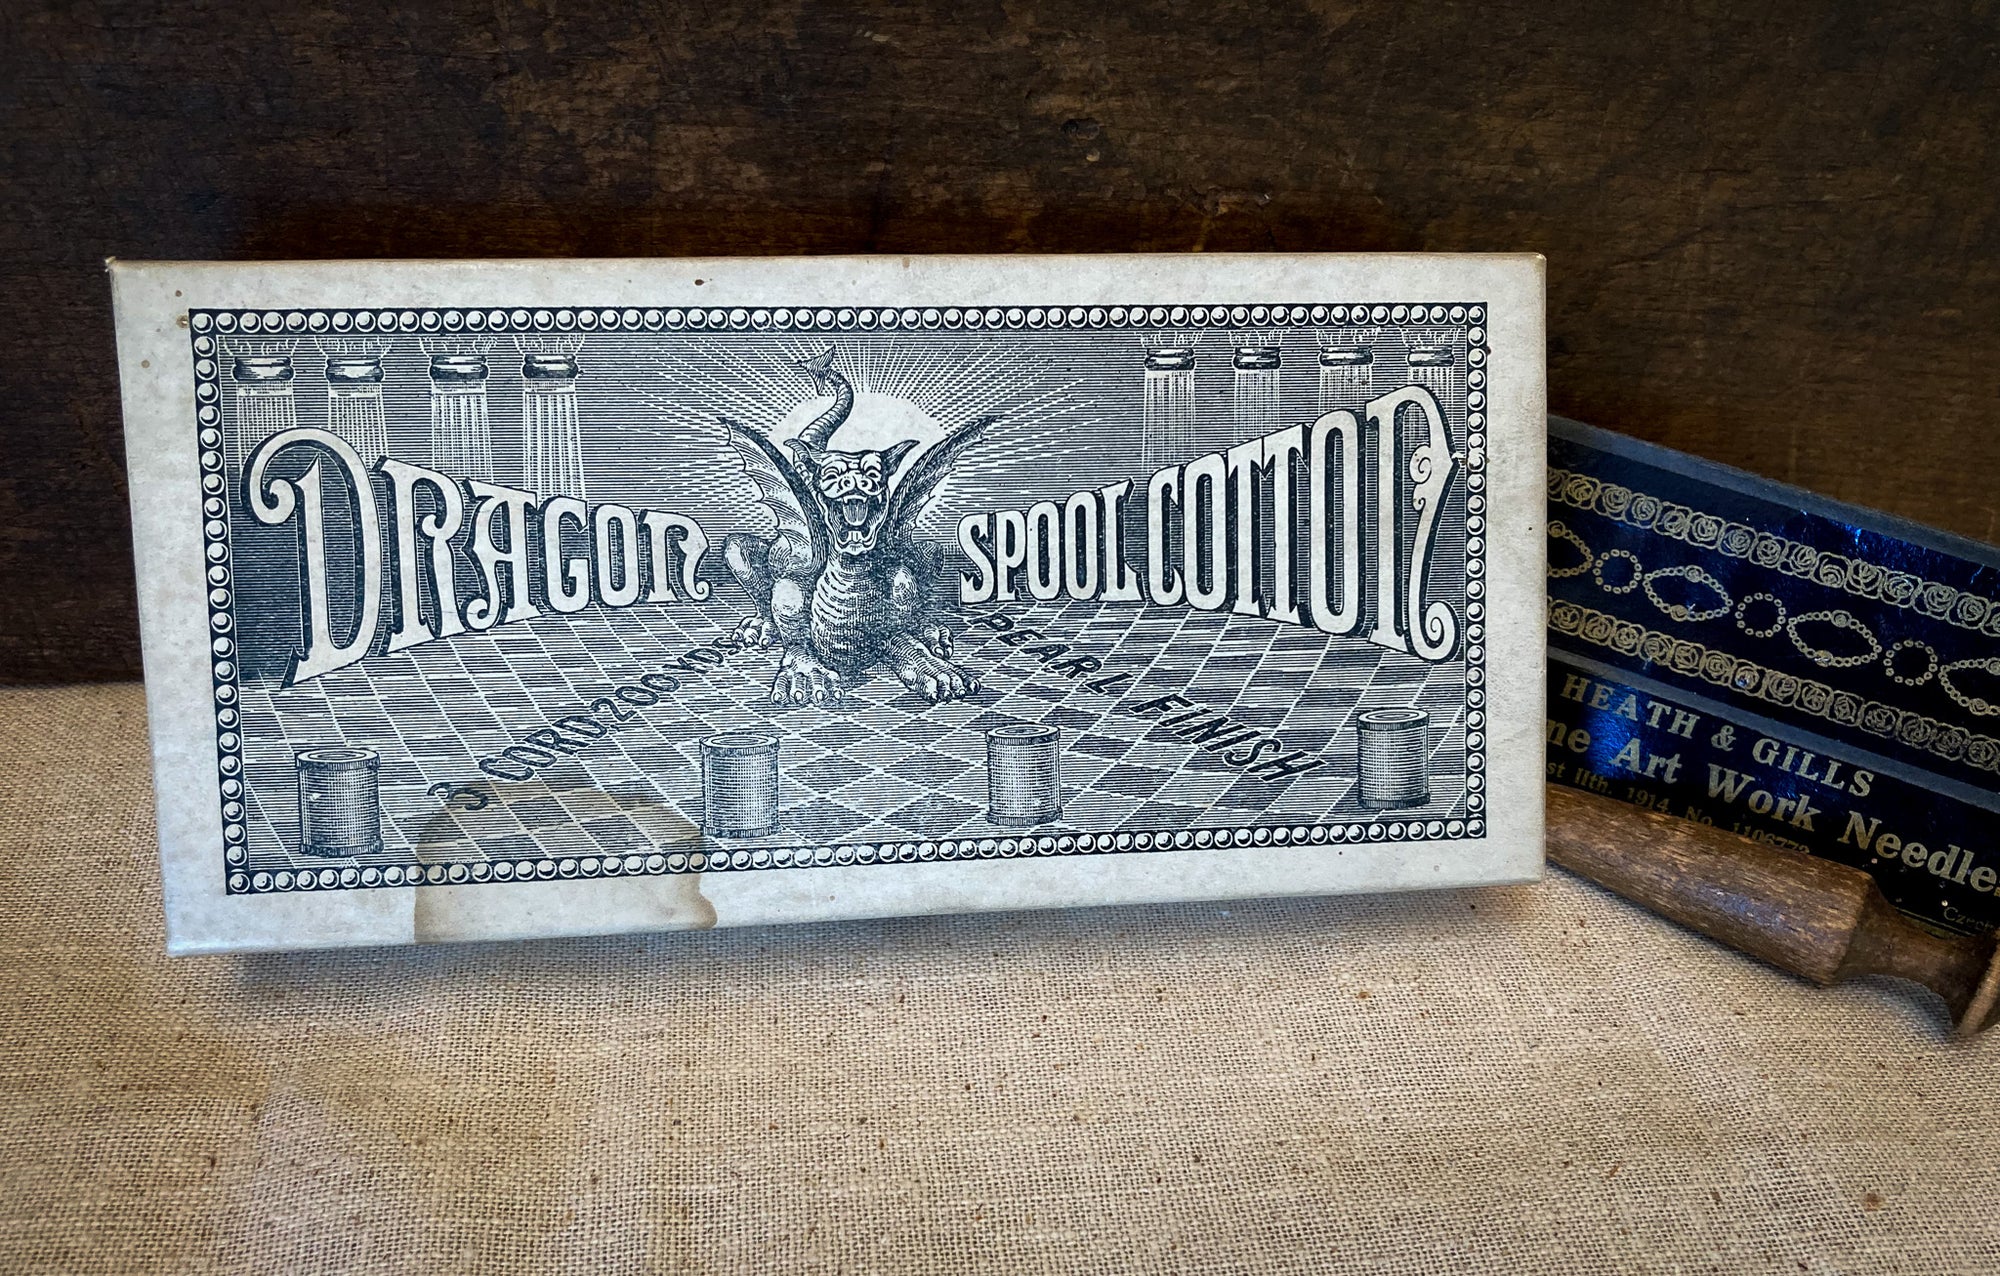 1880 – 1890 Dragon Spool Cotton, New in Original Box